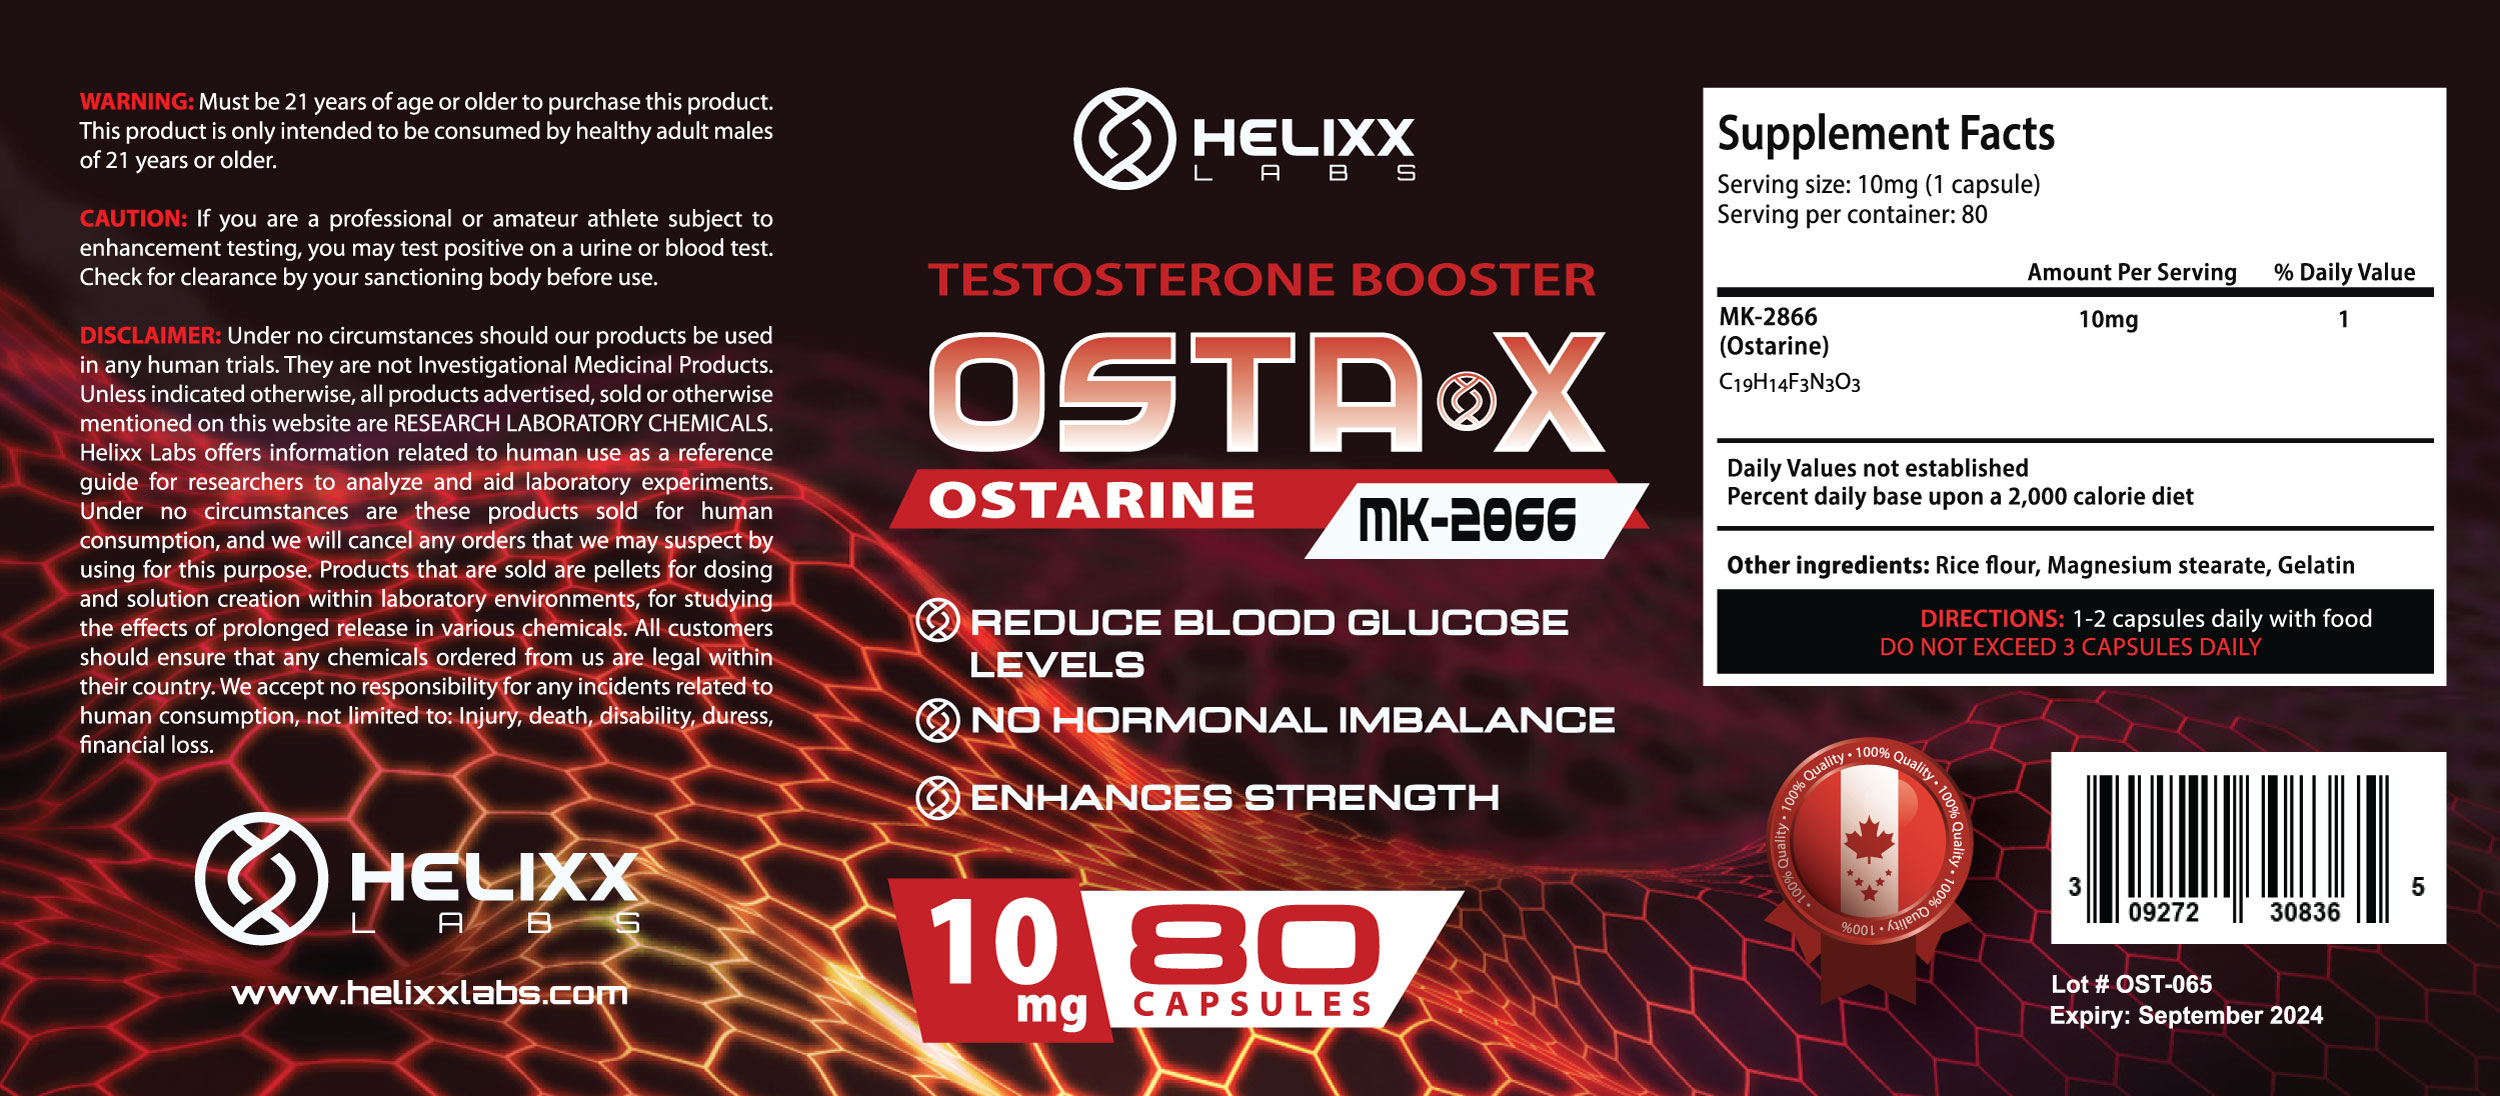 Helixx-OSTA-X-curves